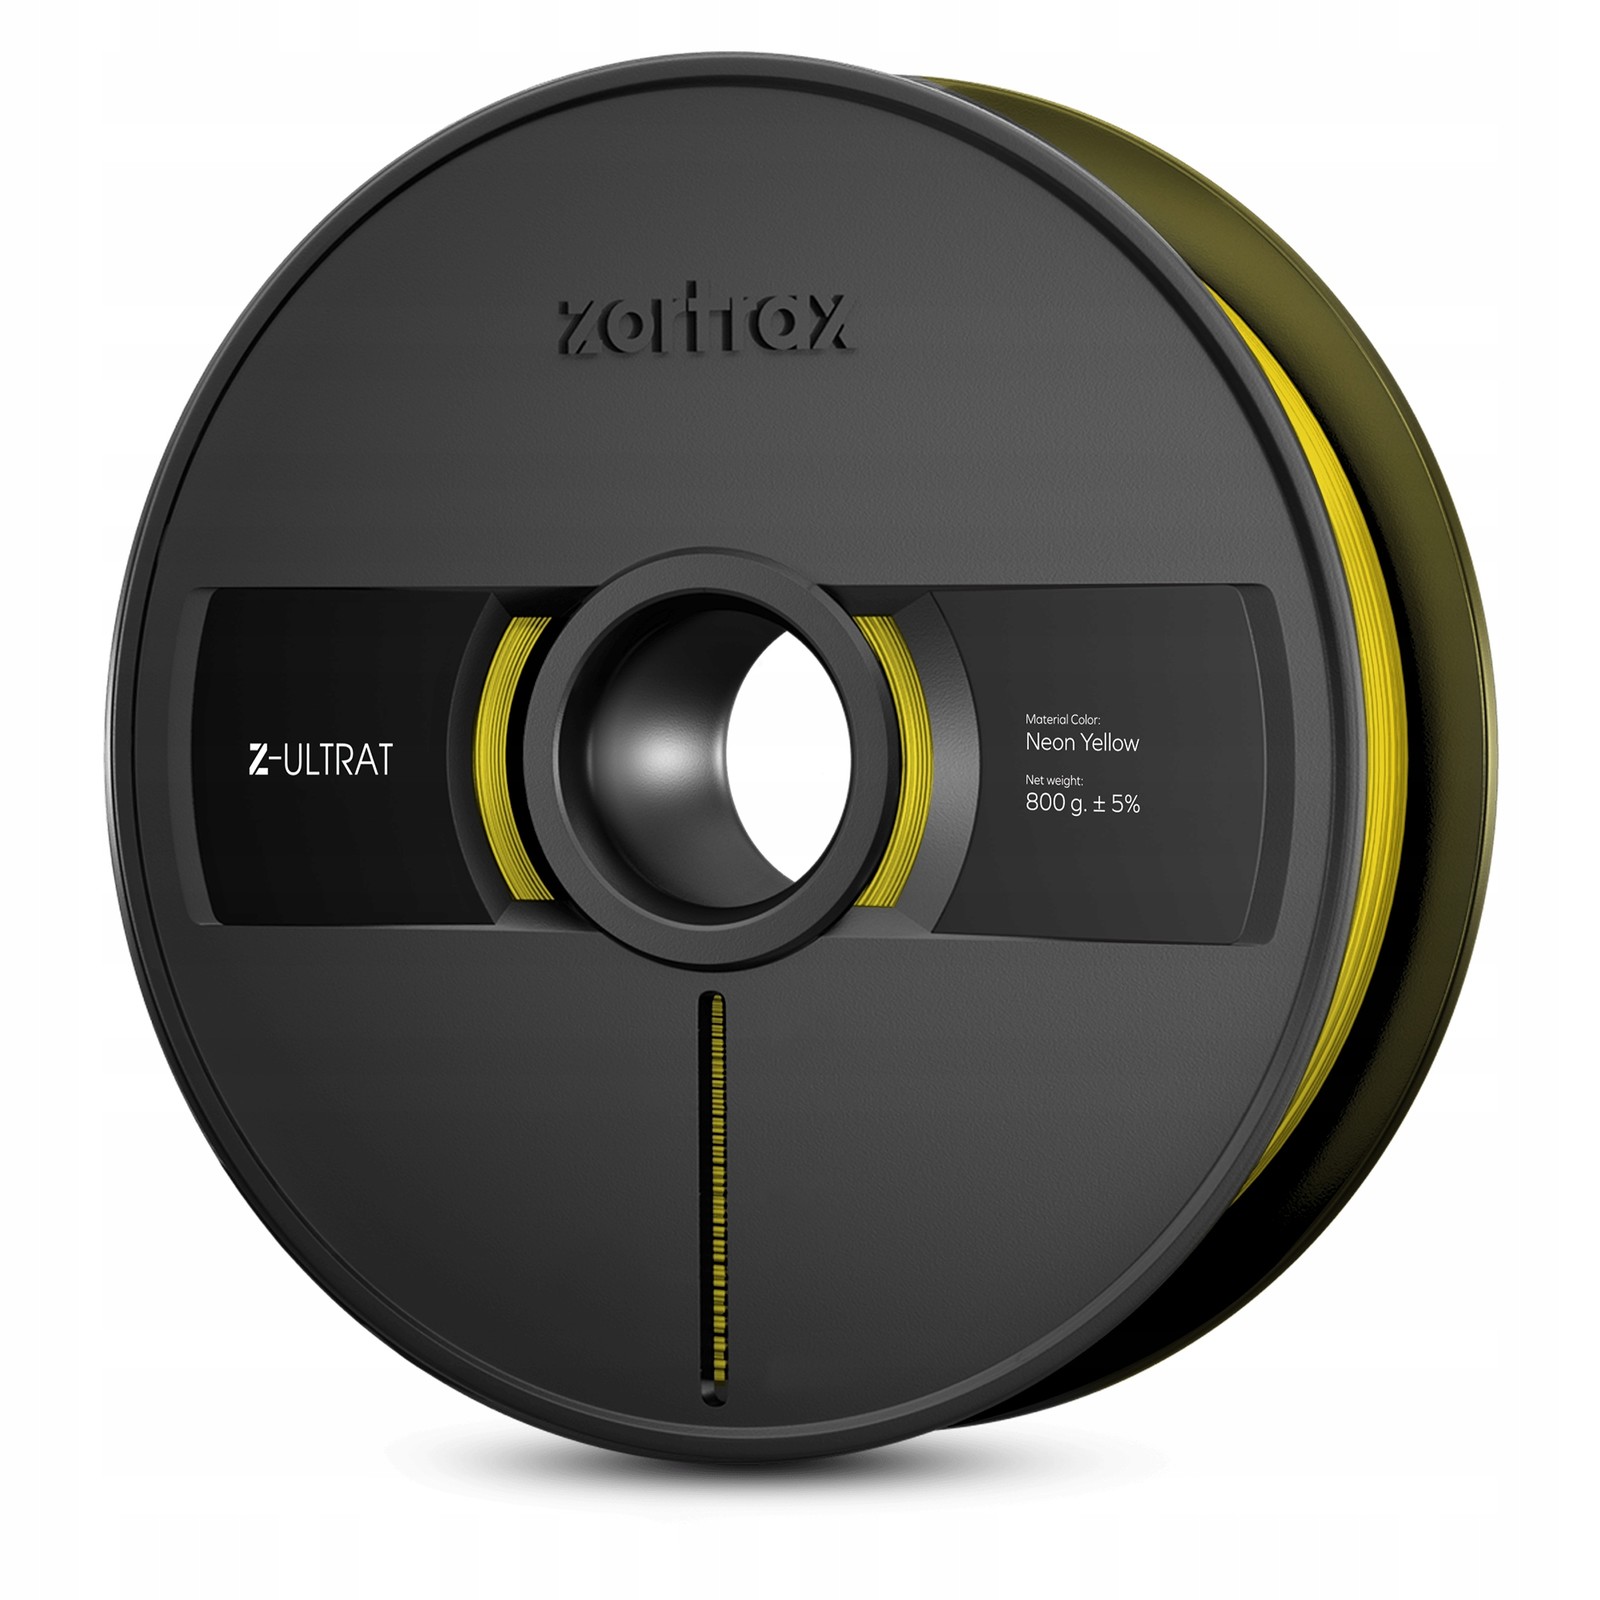 Filament Zortrax Z-Ultrat 1,75mm Neonově Žlutá/Neon Žlutá 800g